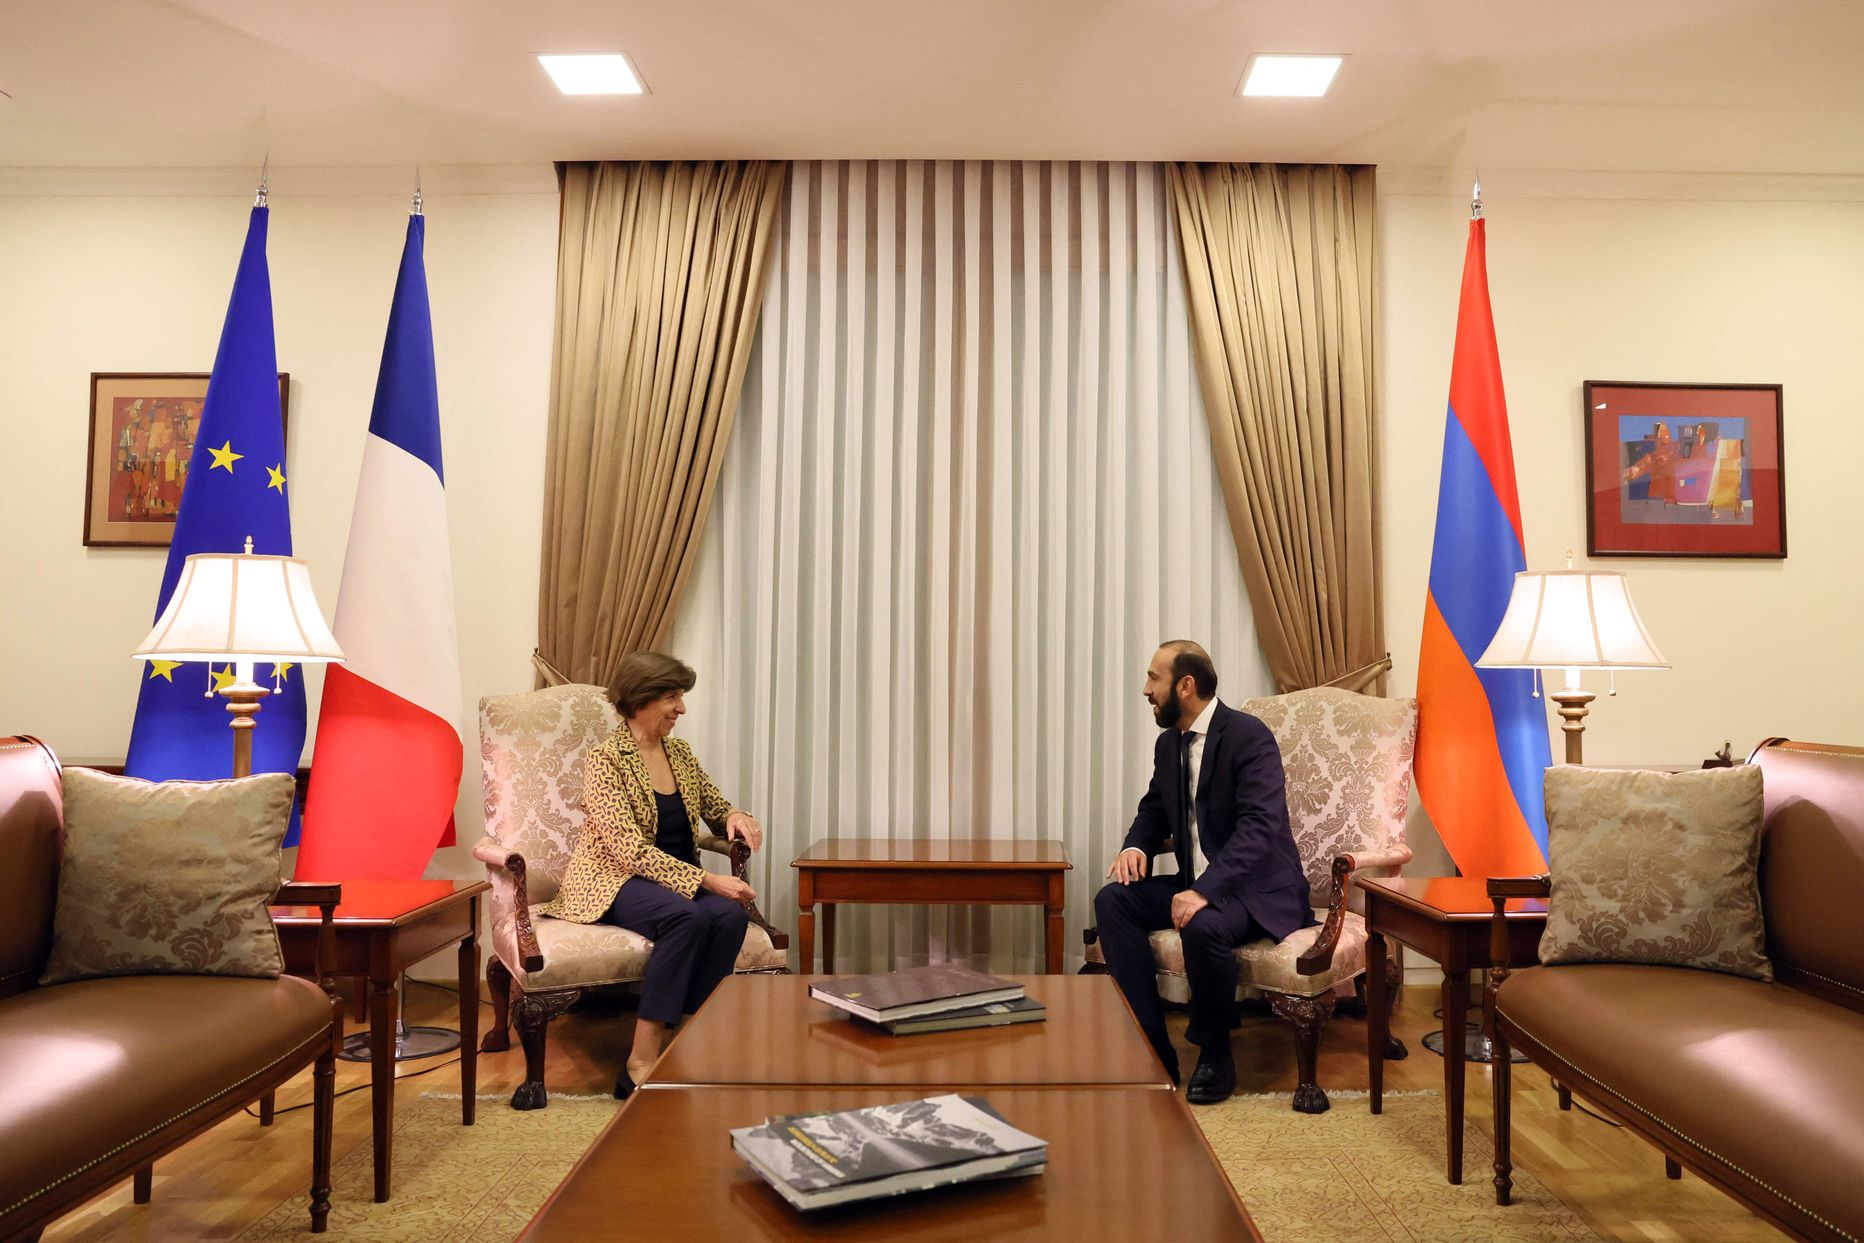 Prantsuse välisminister Catherine Colonna kohtumas oma Armeenia kolleegi Ararat Mirzojaniga 3. oktoobril Jerevanis.